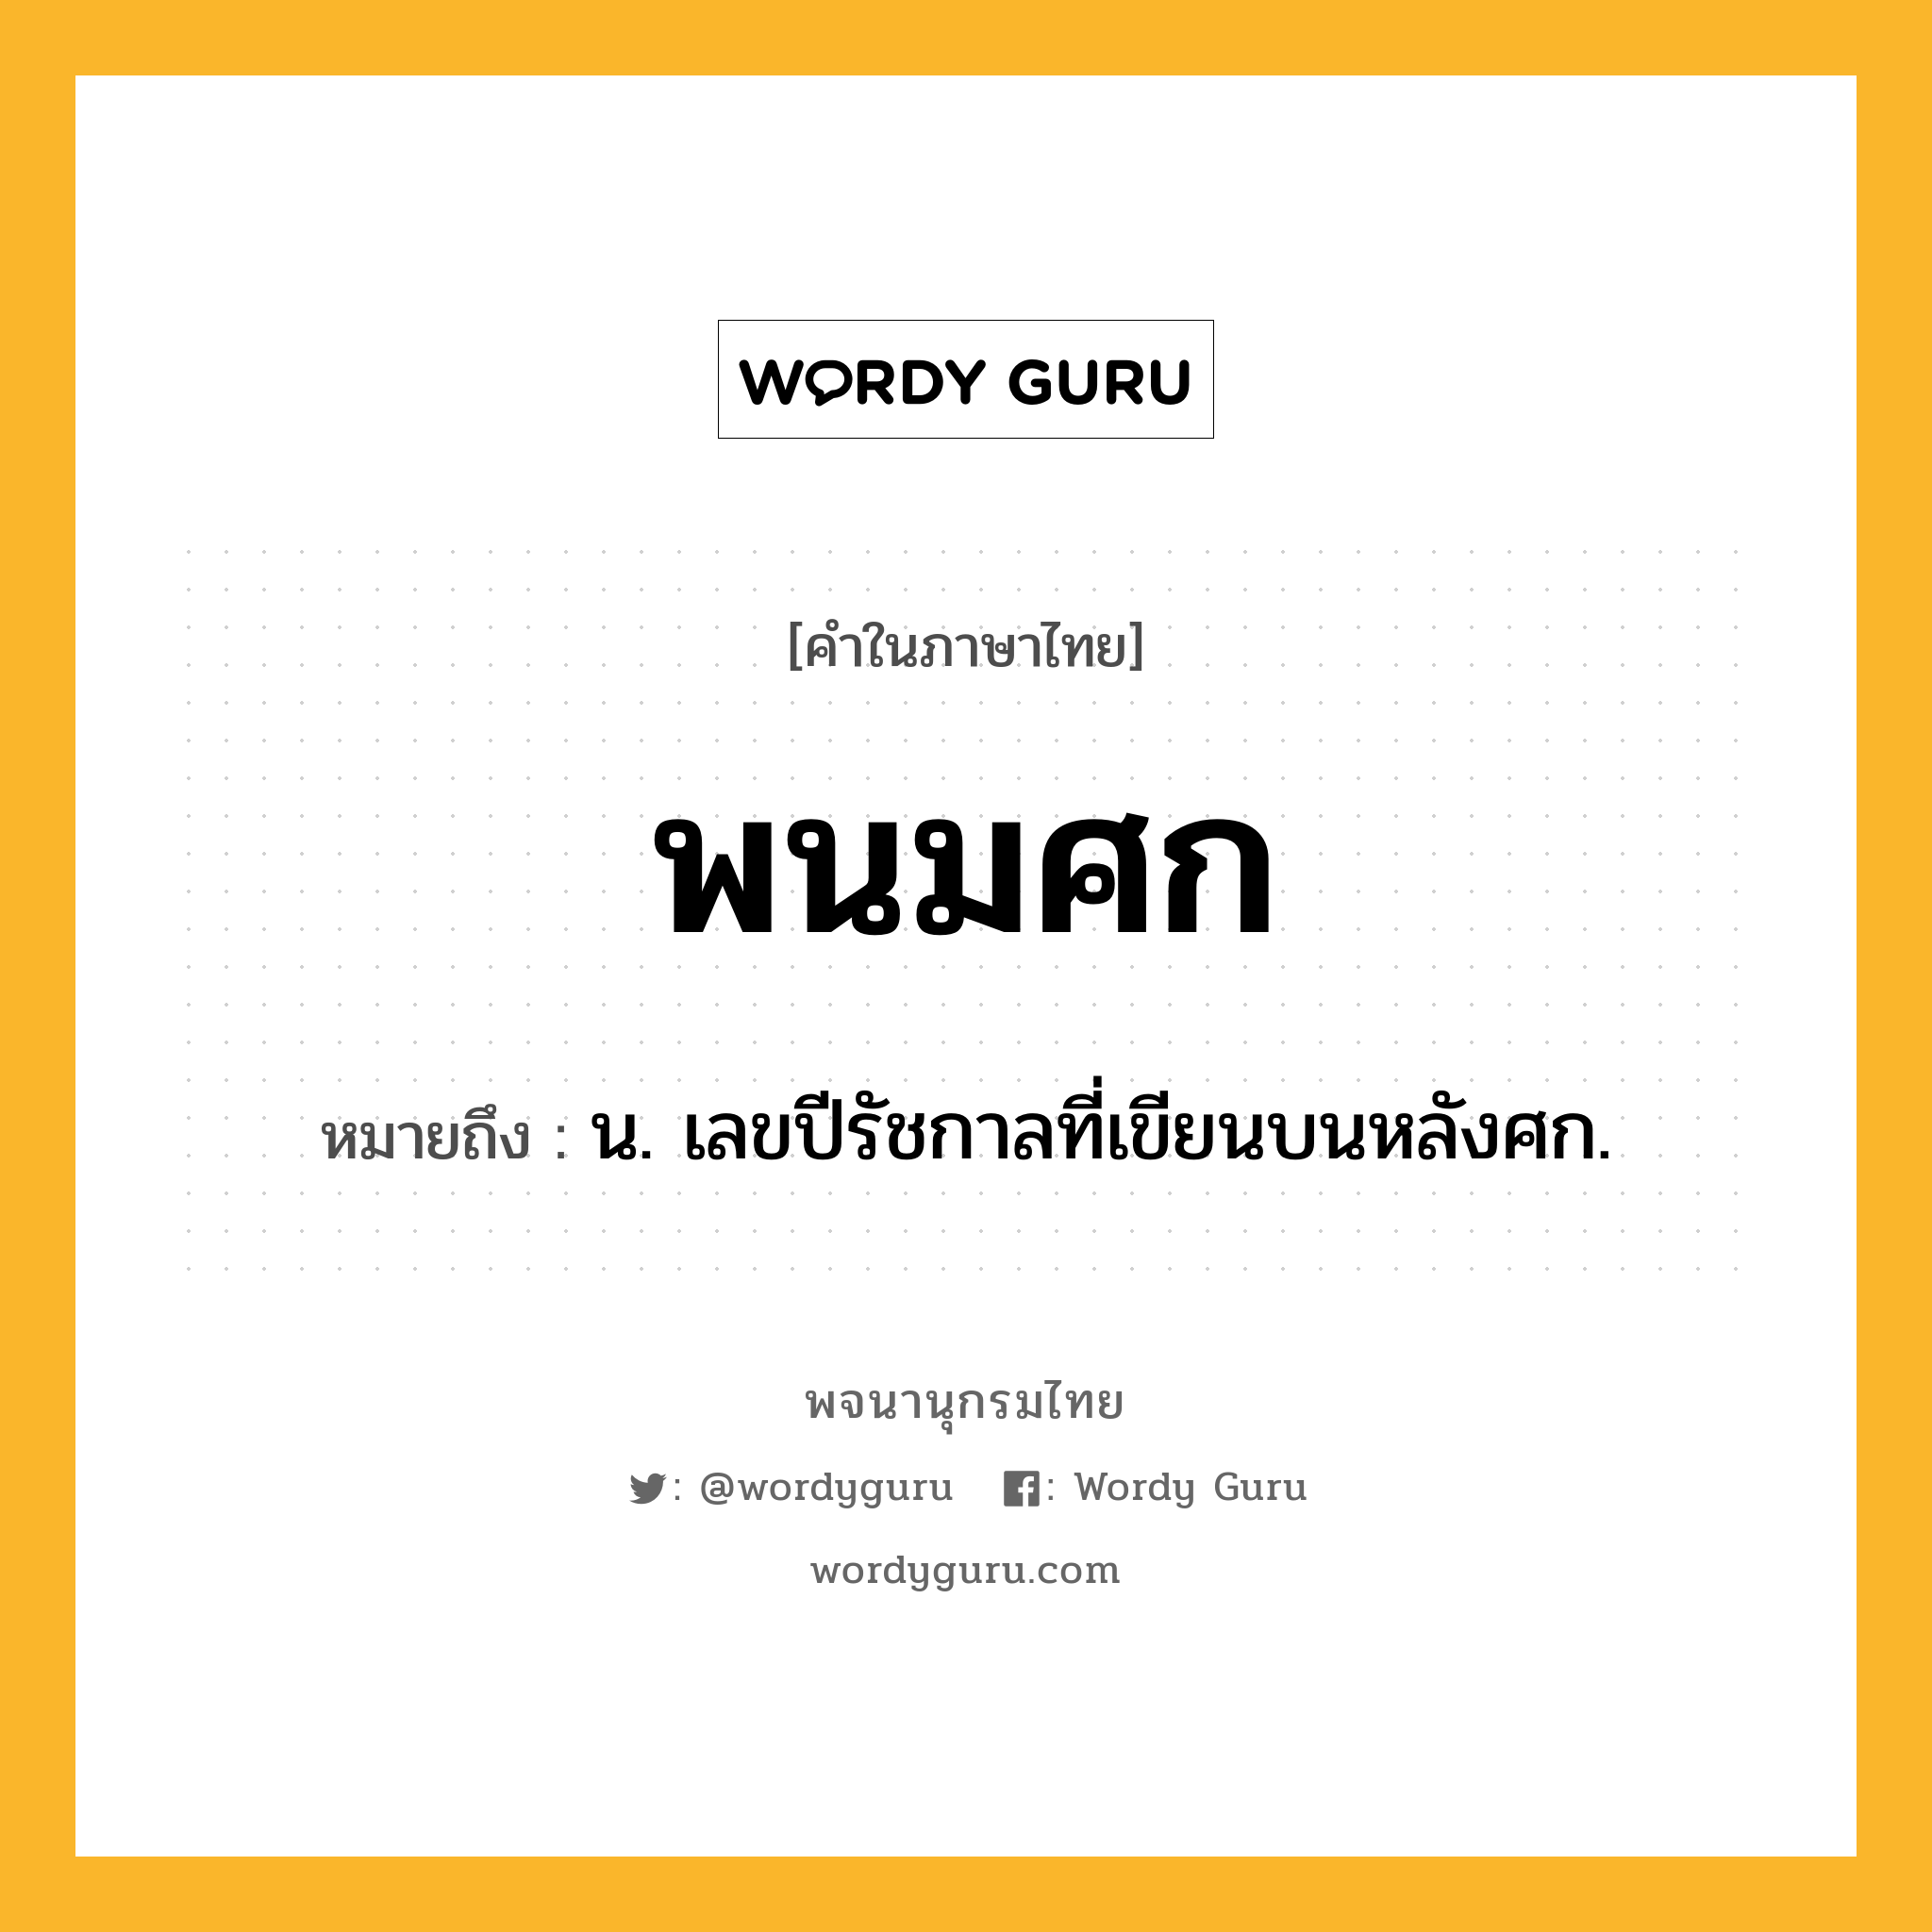 พนมศก ความหมาย หมายถึงอะไร?, คำในภาษาไทย พนมศก หมายถึง น. เลขปีรัชกาลที่เขียนบนหลังศก.